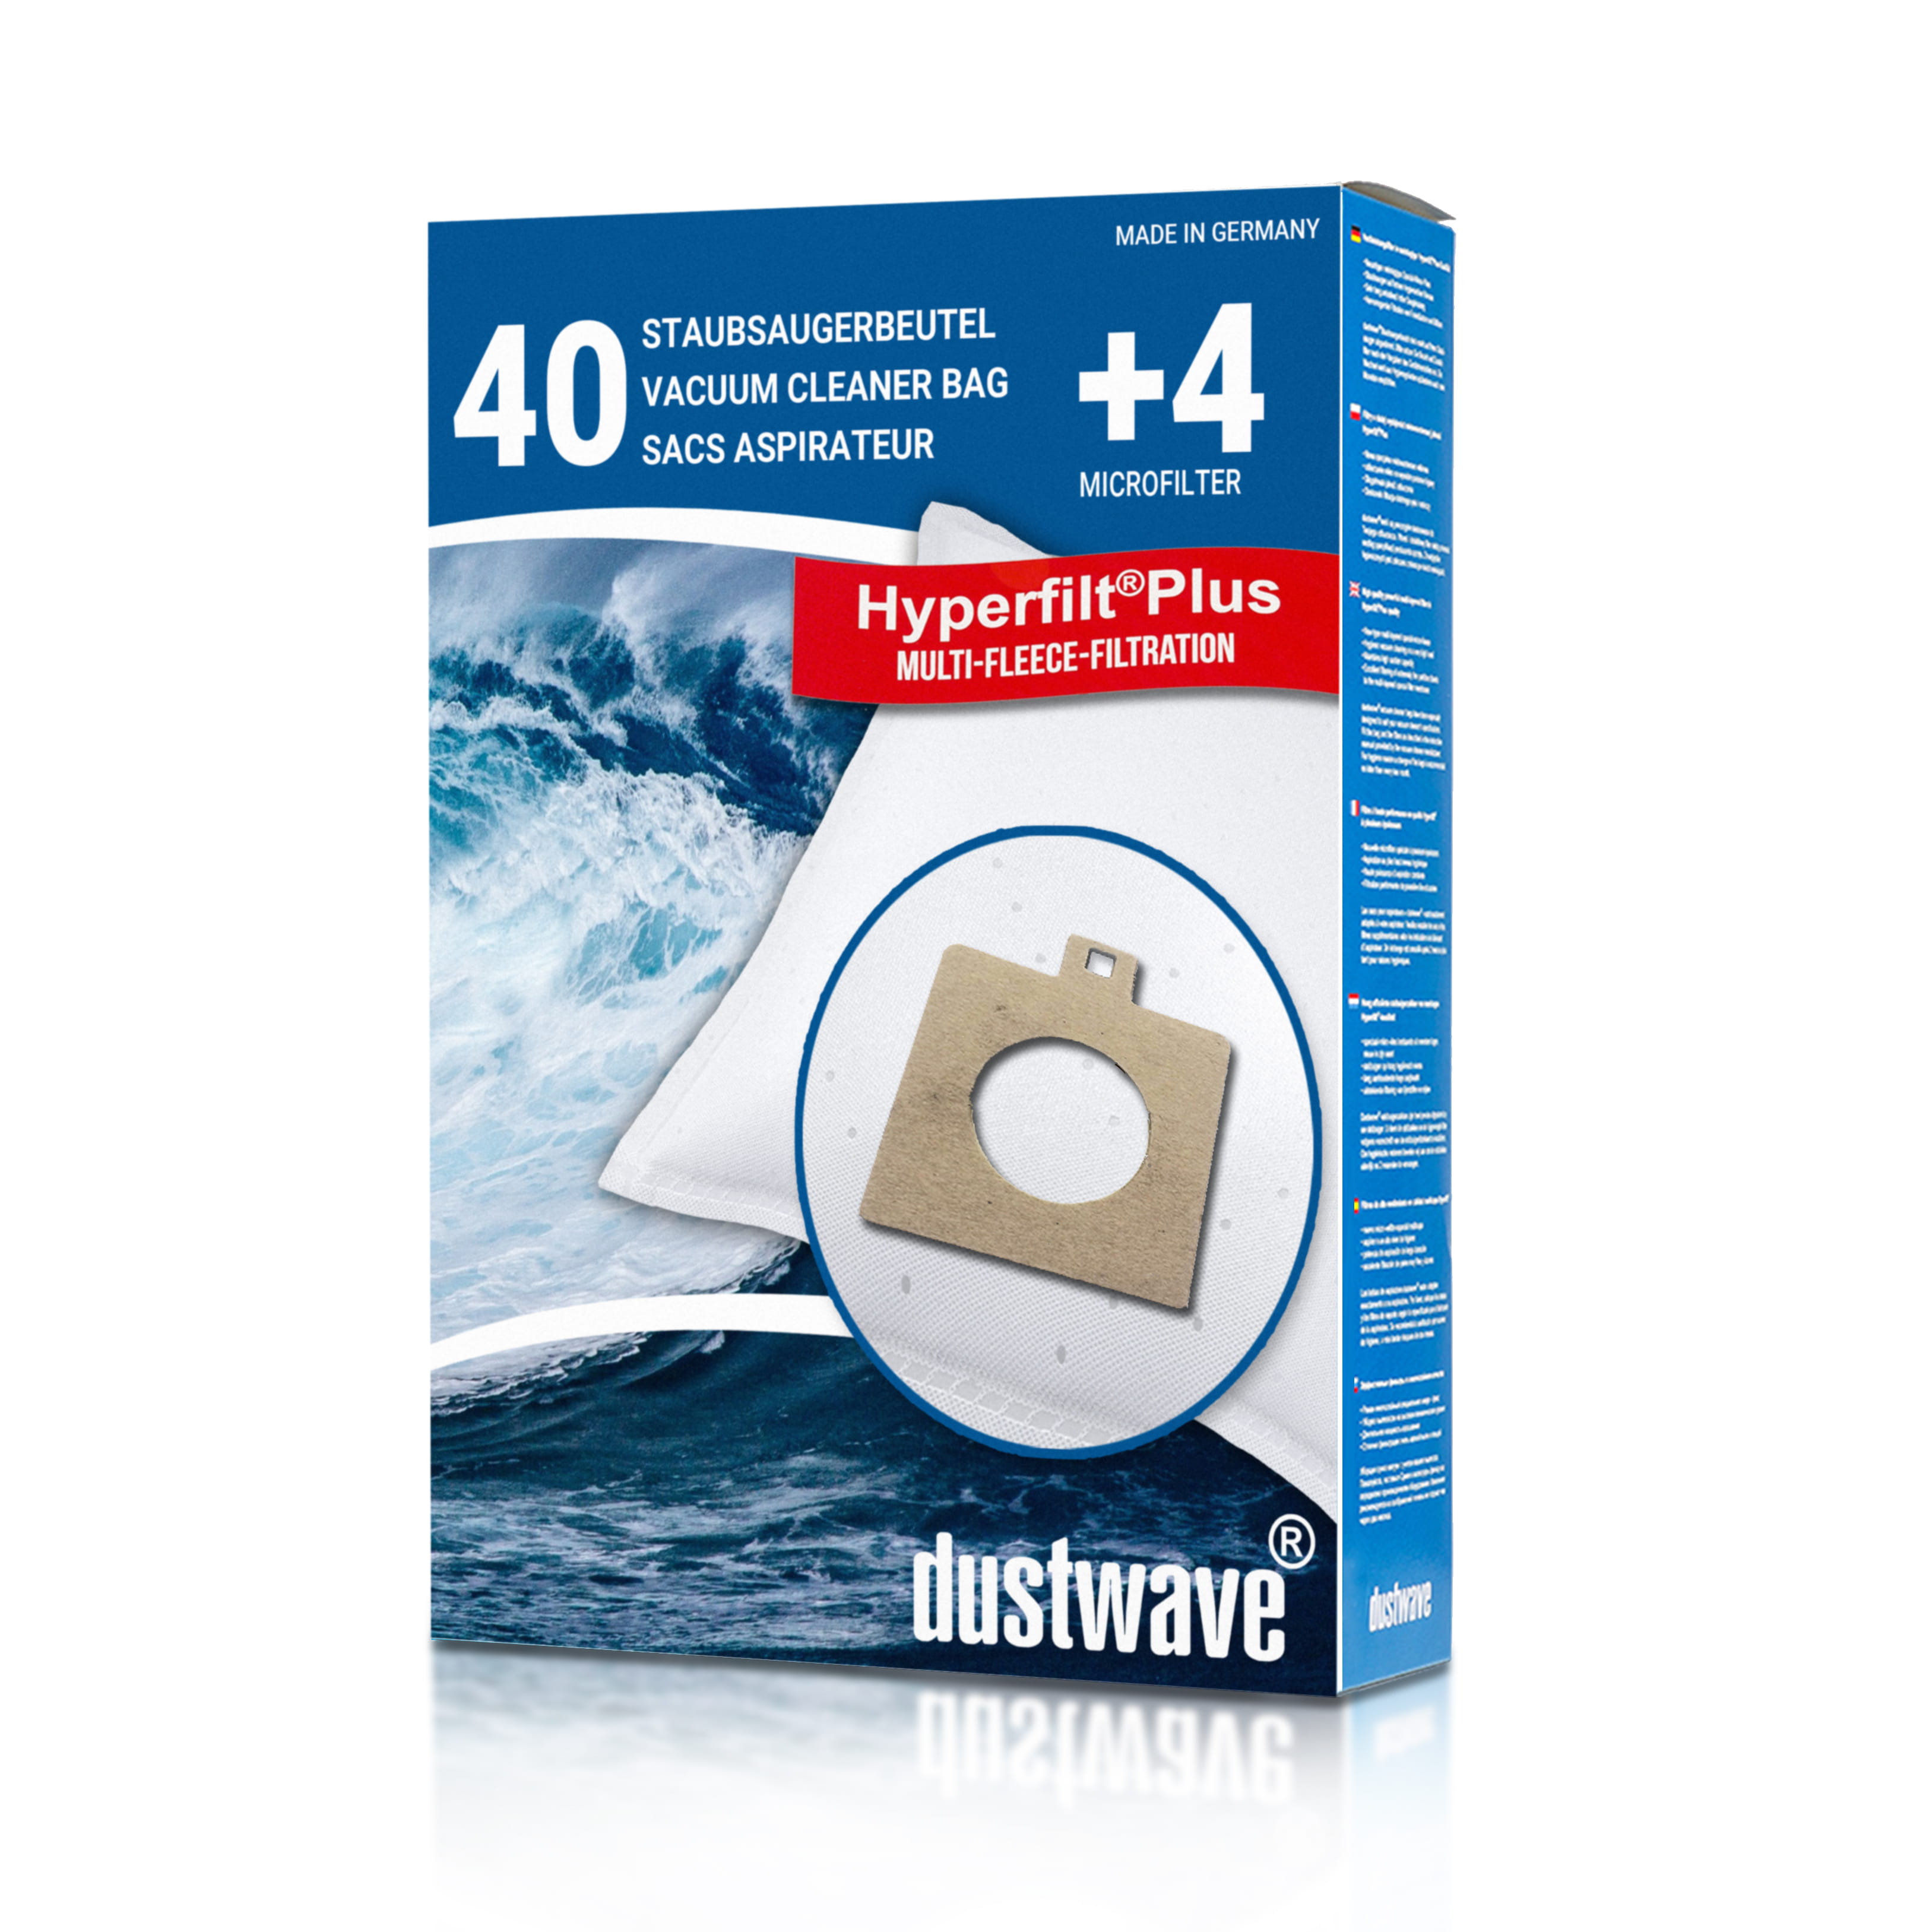 Dustwave® 40 Staubsaugerbeutel für AEG Smart 486 - hocheffizient mit Hygieneverschluss - Made in Germany